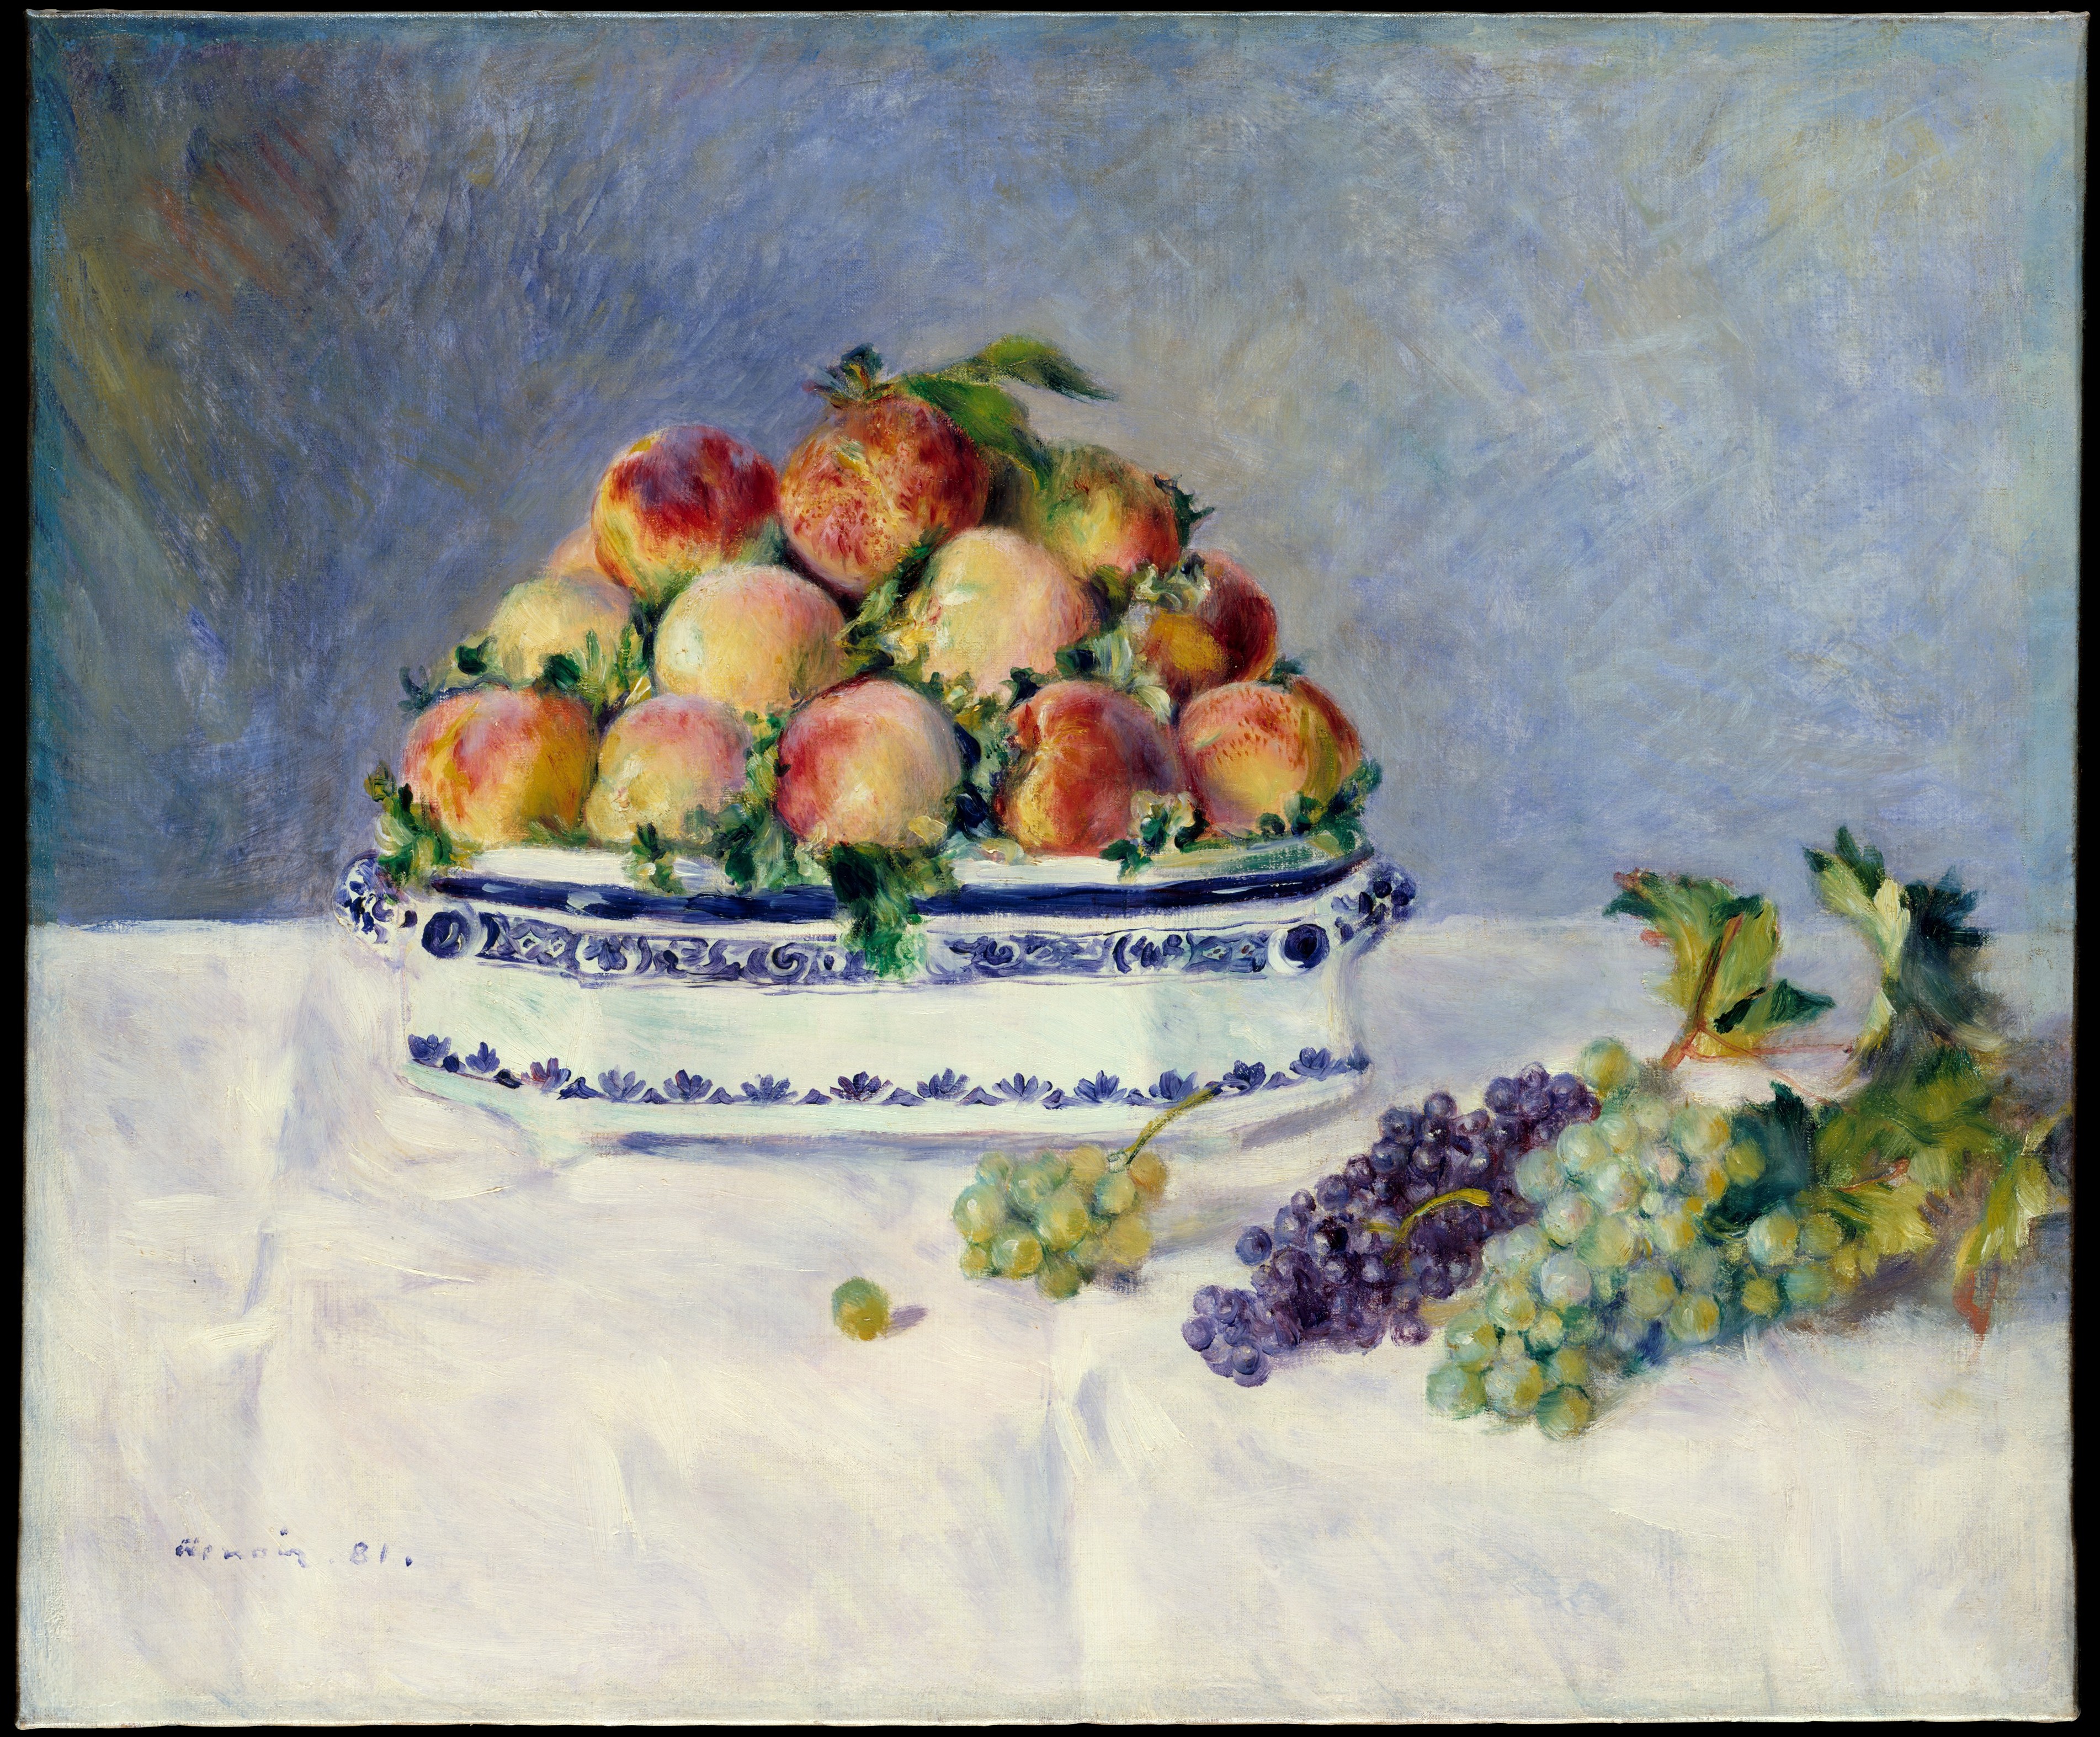 Nature morte aux pêches et aux raisins by Pierre-Auguste Renoir - 1881 - 53.3 x 64.8 cm Metropolitan Museum of Art